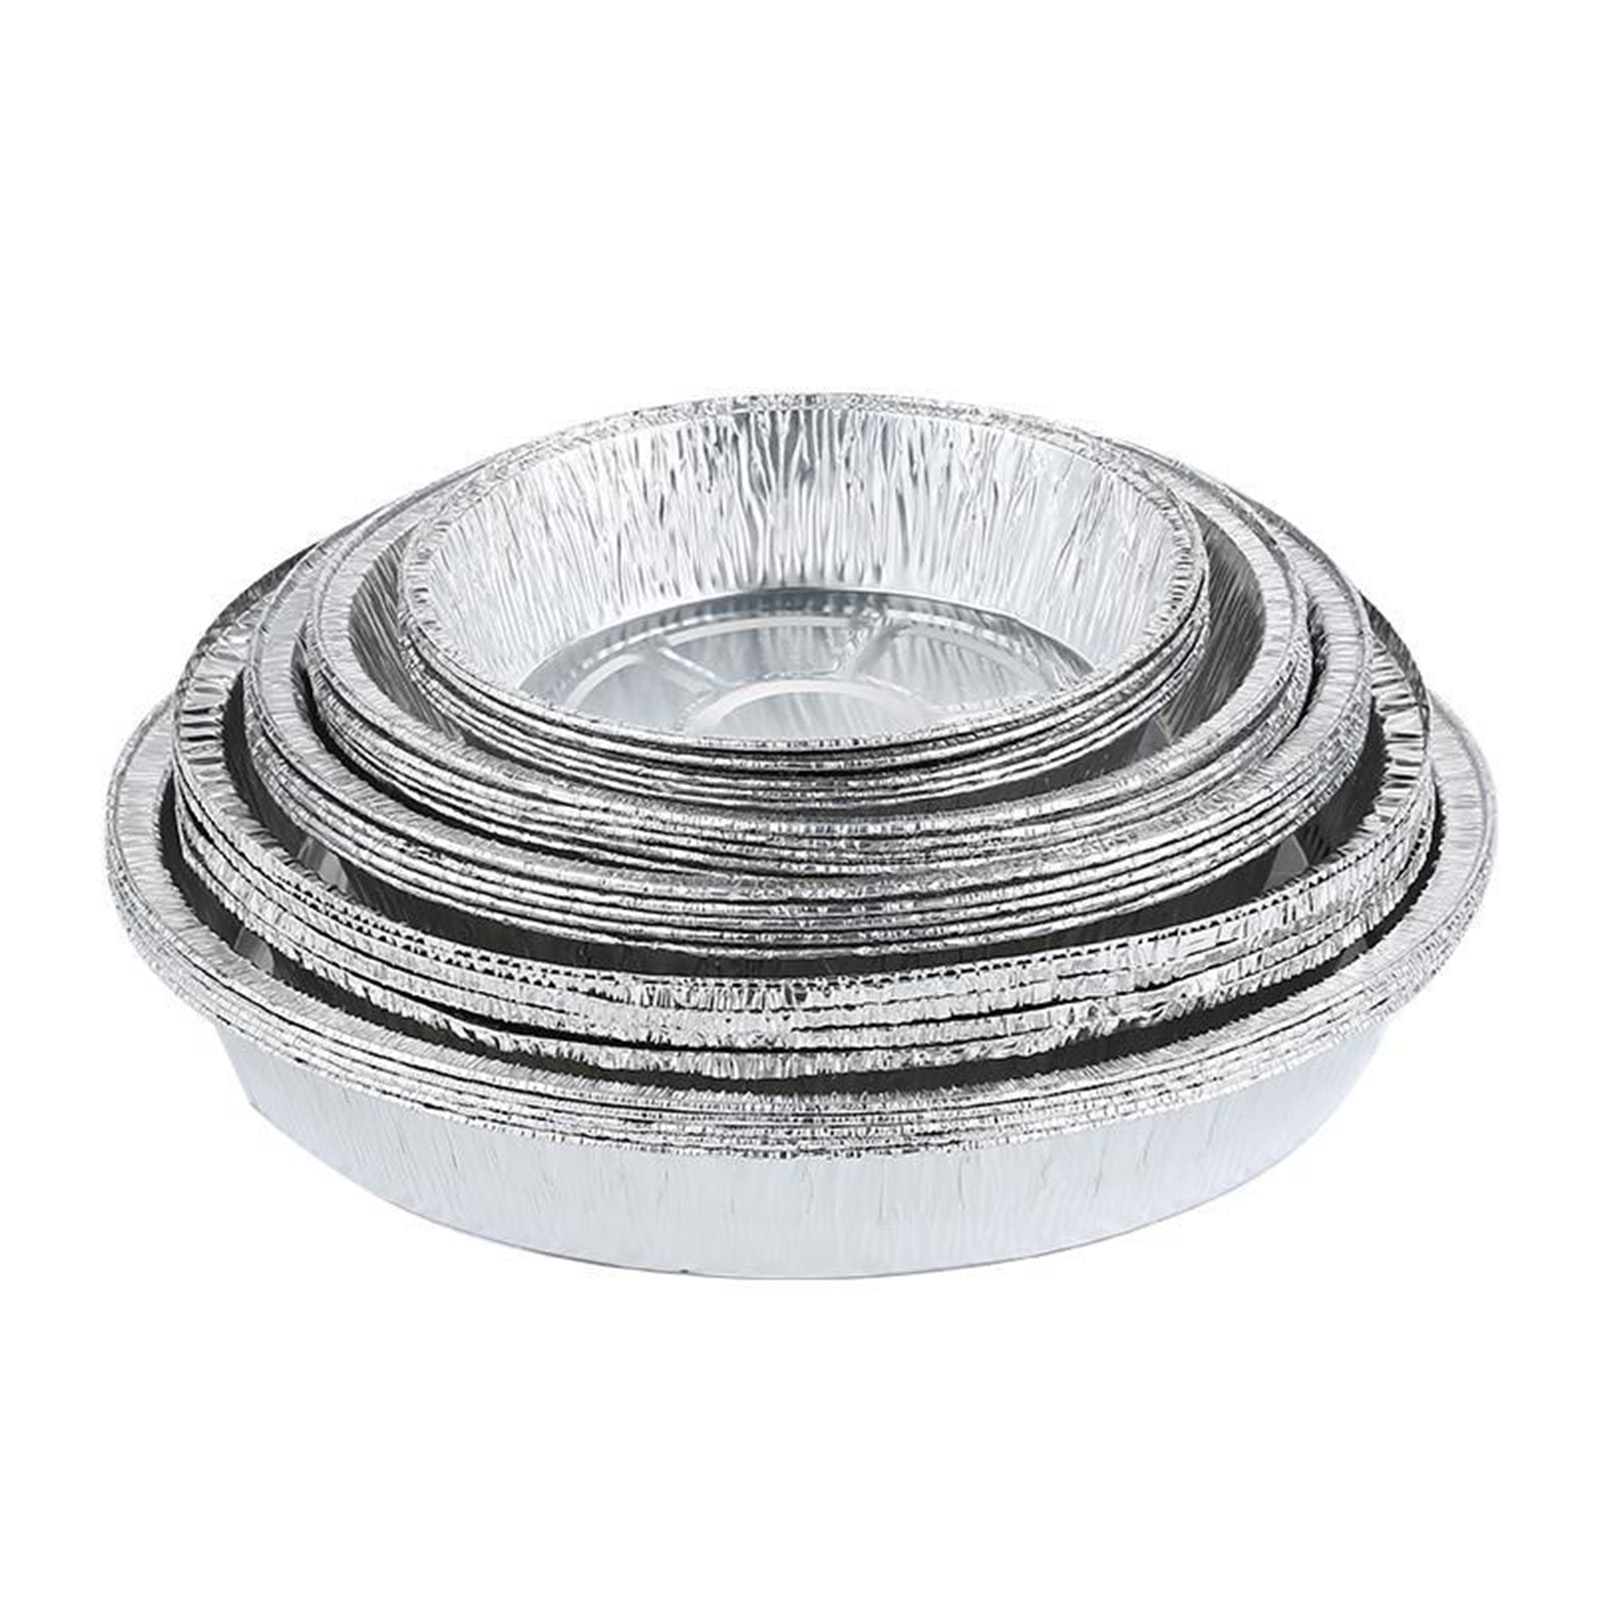 6 inch/7 inch ronde gezonde aluminium folie Pan Voedselcontainers Handige foliebanen voor bakken/opslaan/herverwarming/maaltijdbereid